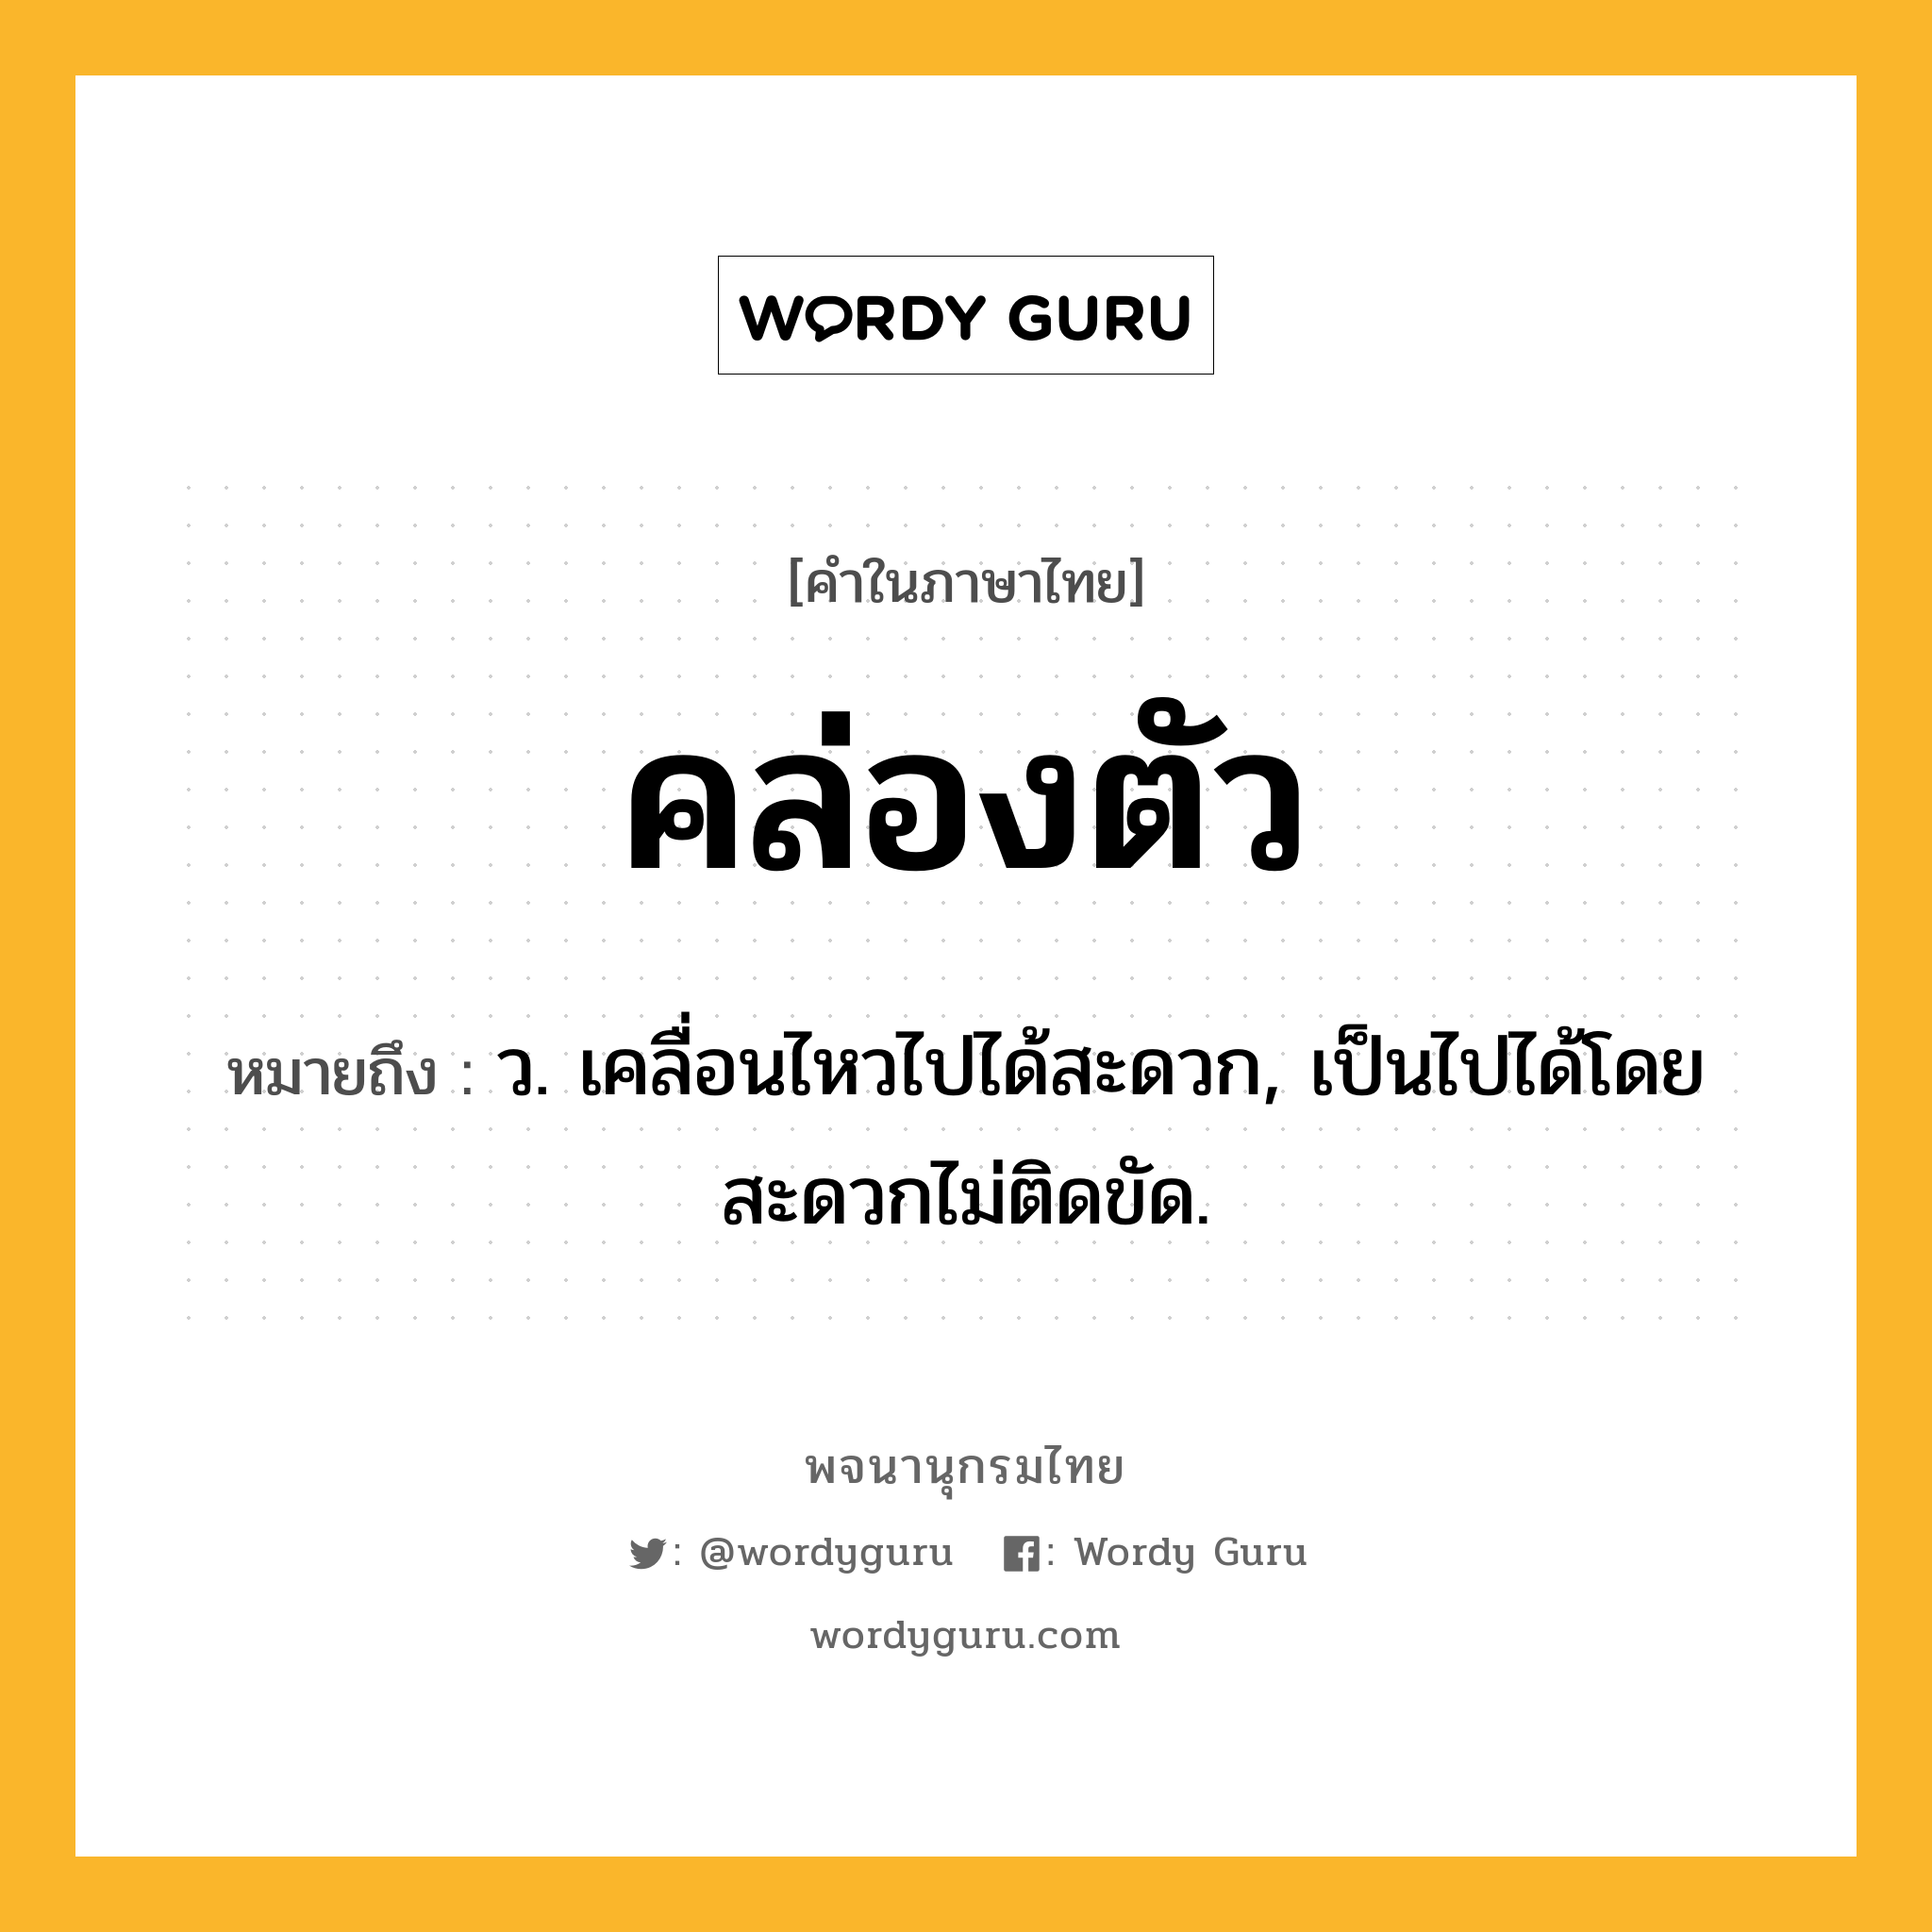 คล่องตัว ความหมาย หมายถึงอะไร?, คำในภาษาไทย คล่องตัว หมายถึง ว. เคลื่อนไหวไปได้สะดวก, เป็นไปได้โดยสะดวกไม่ติดขัด.